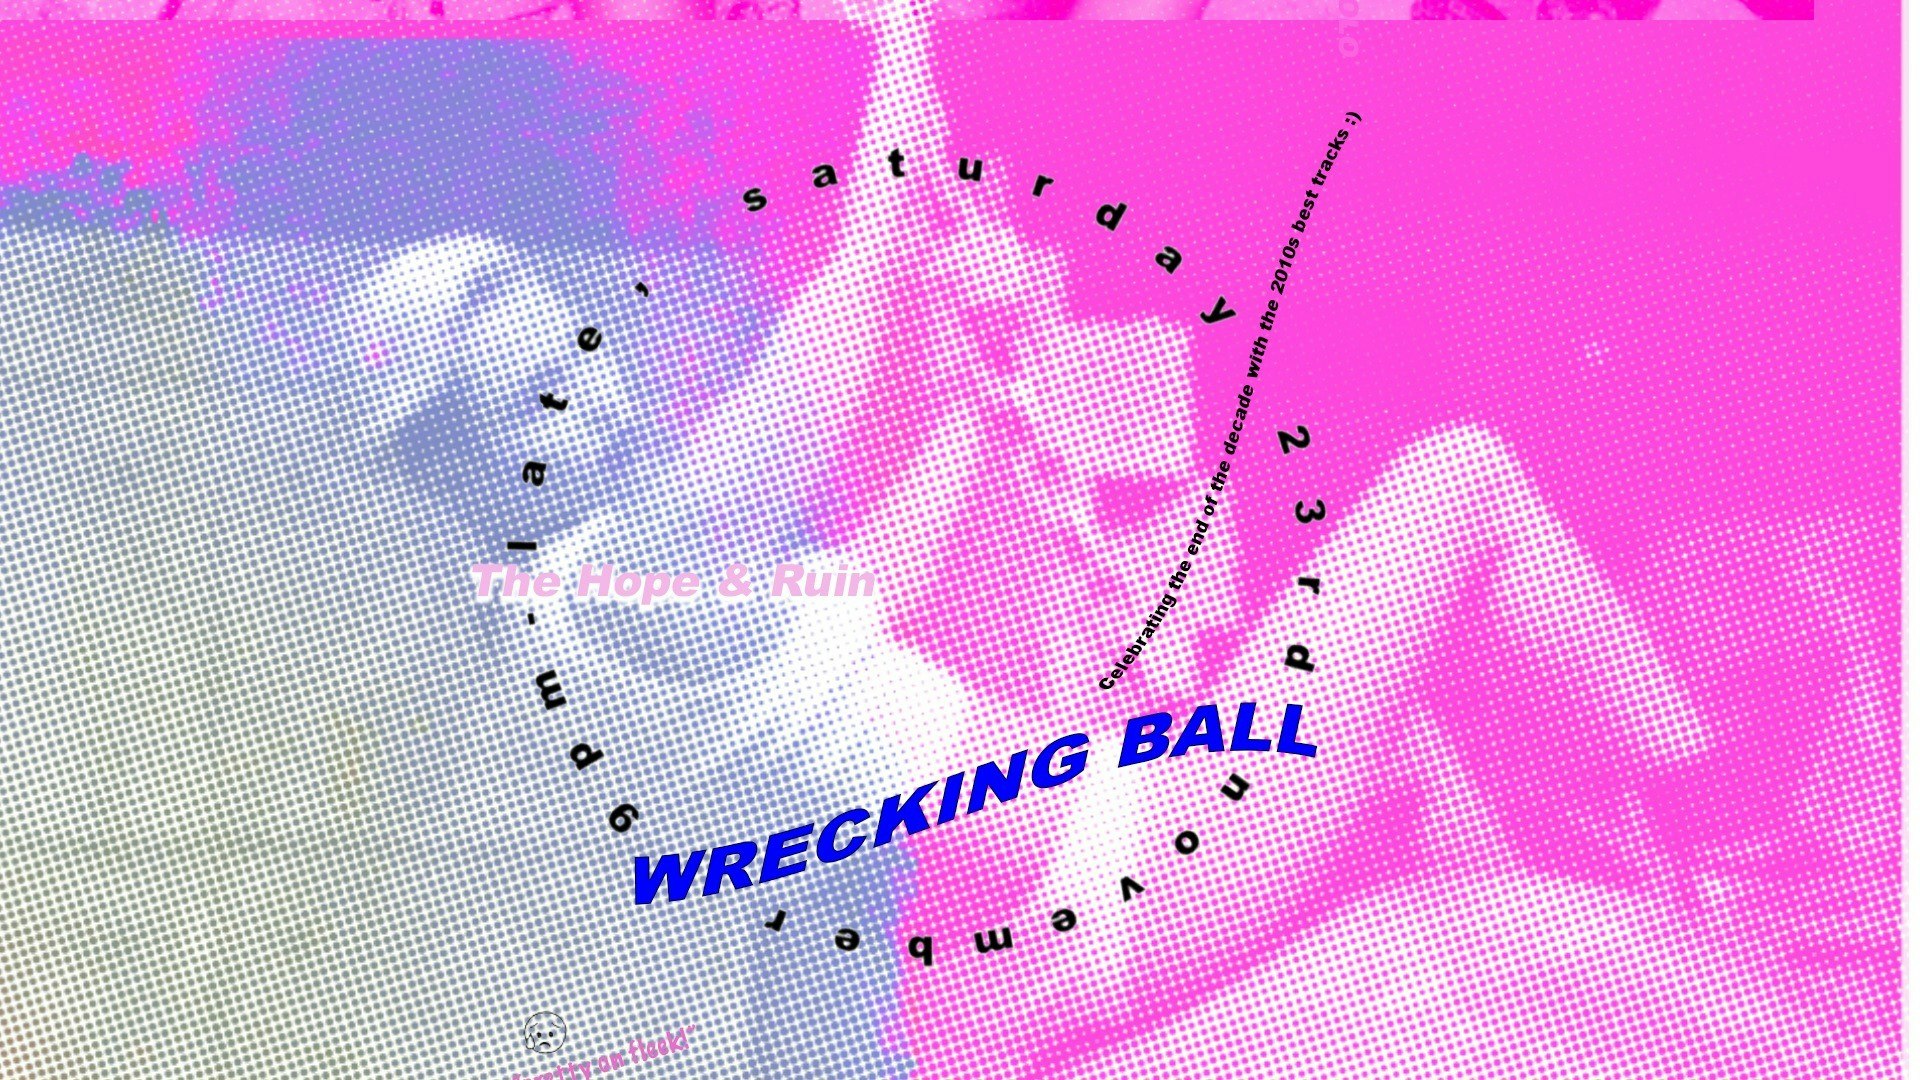 Wrecking Ball // Free Entry // 2010s DJ night